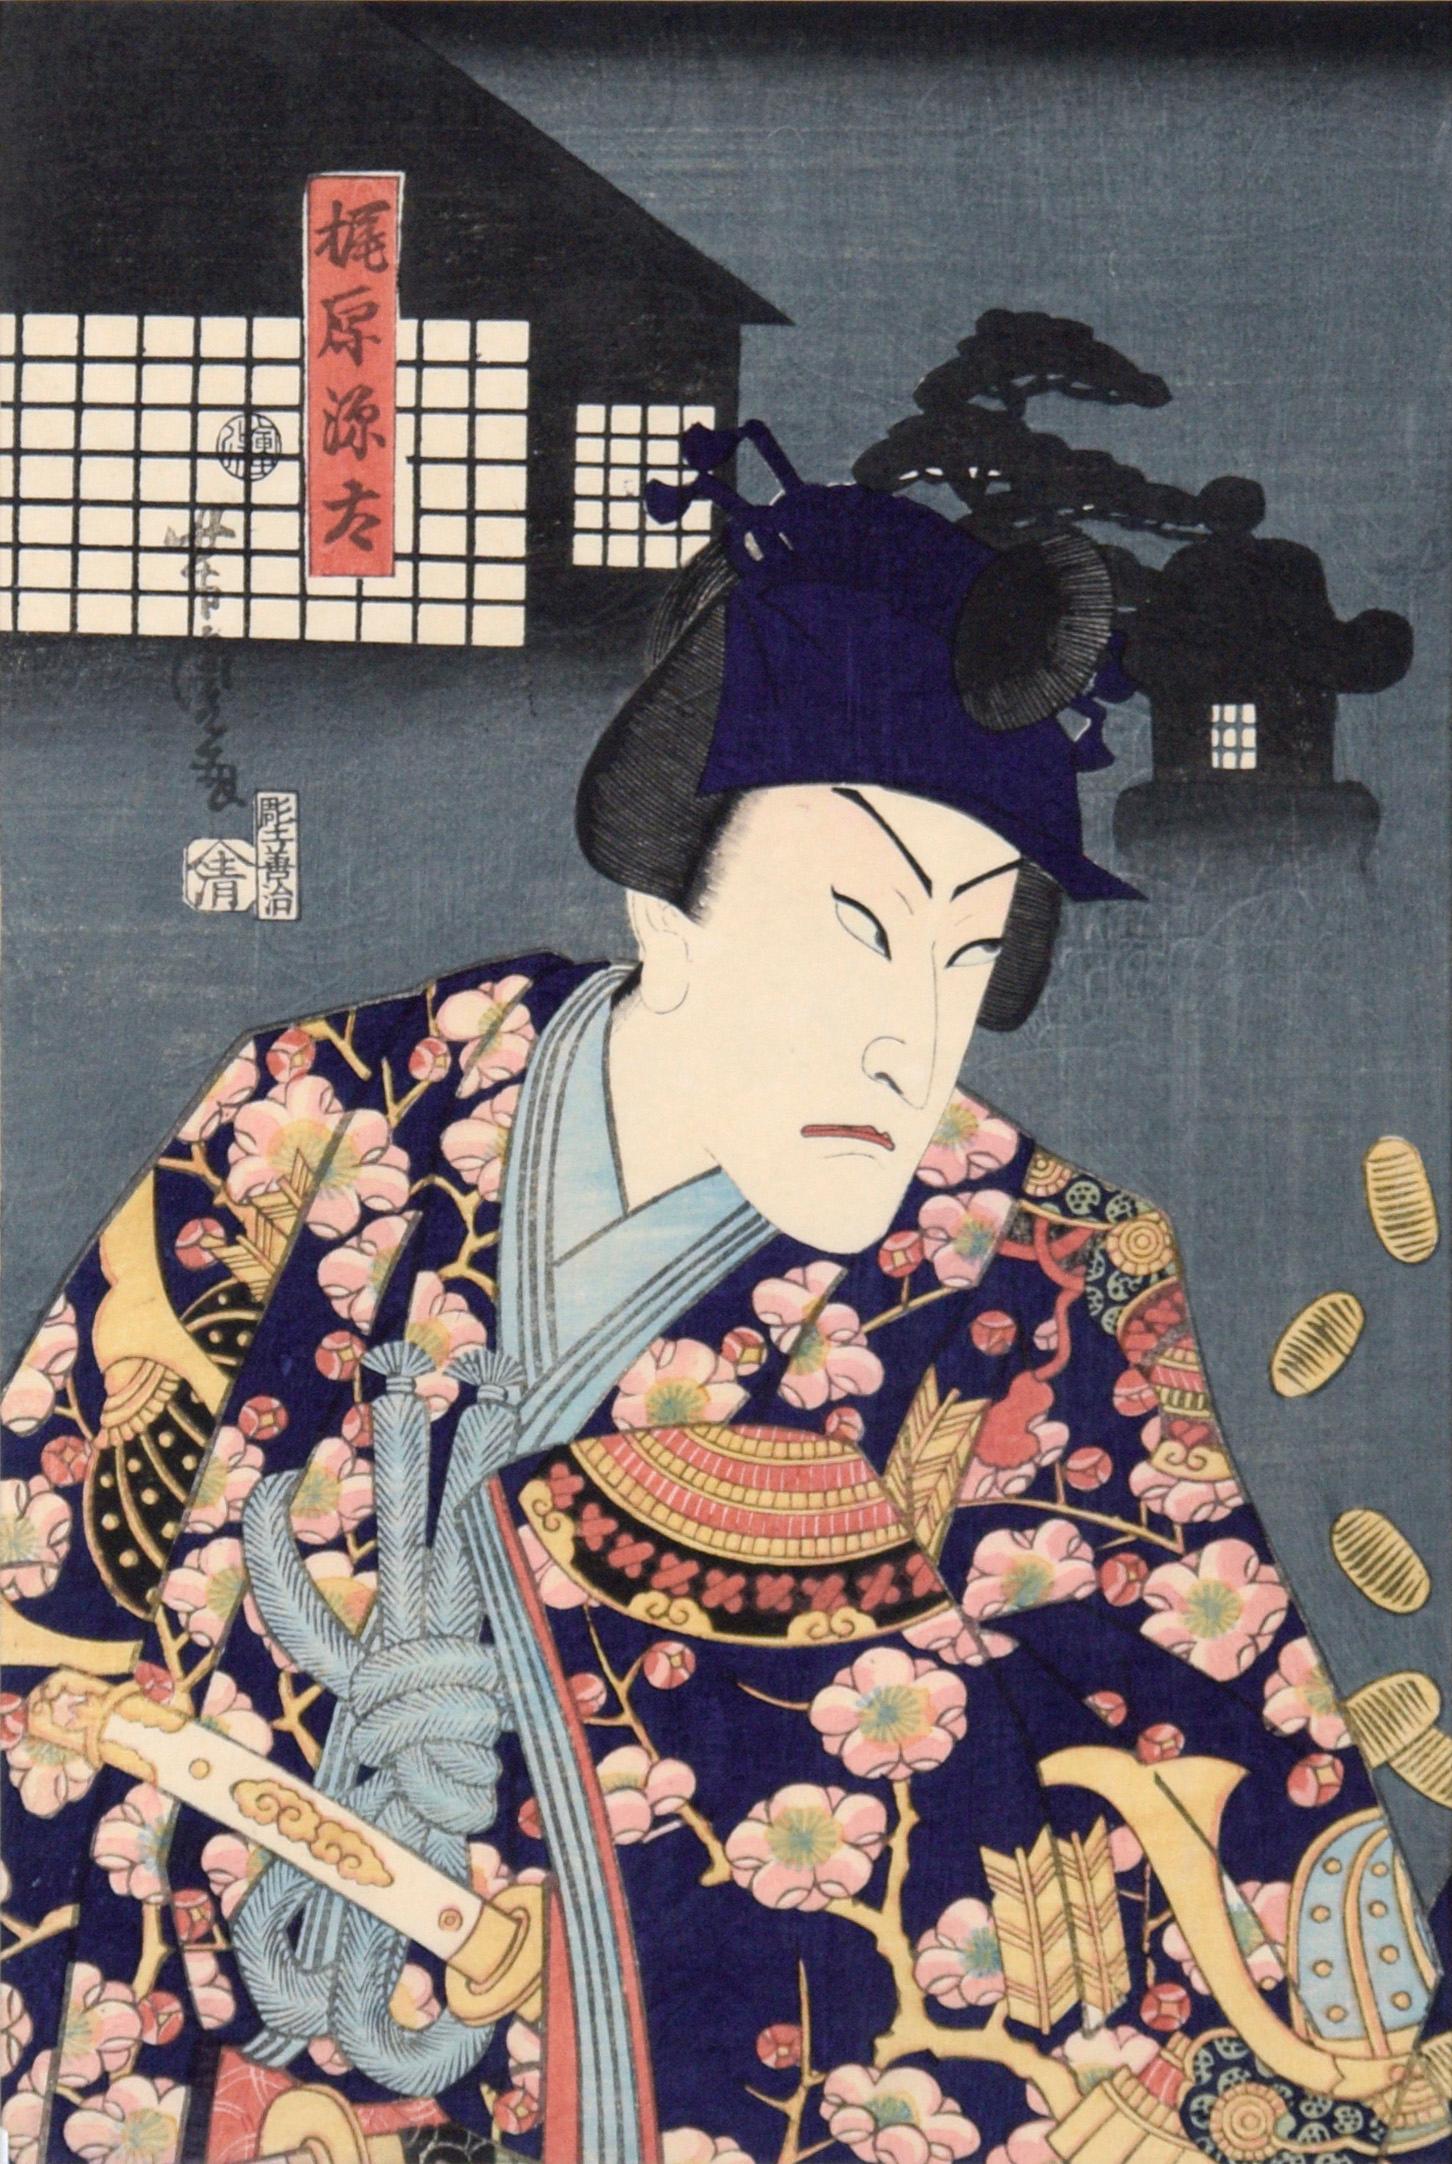 The Samurai Genta Kajiwara - Japanese Woodblock Diptych in Ink on Paper - Edo Print by Utagawa Yoshitora